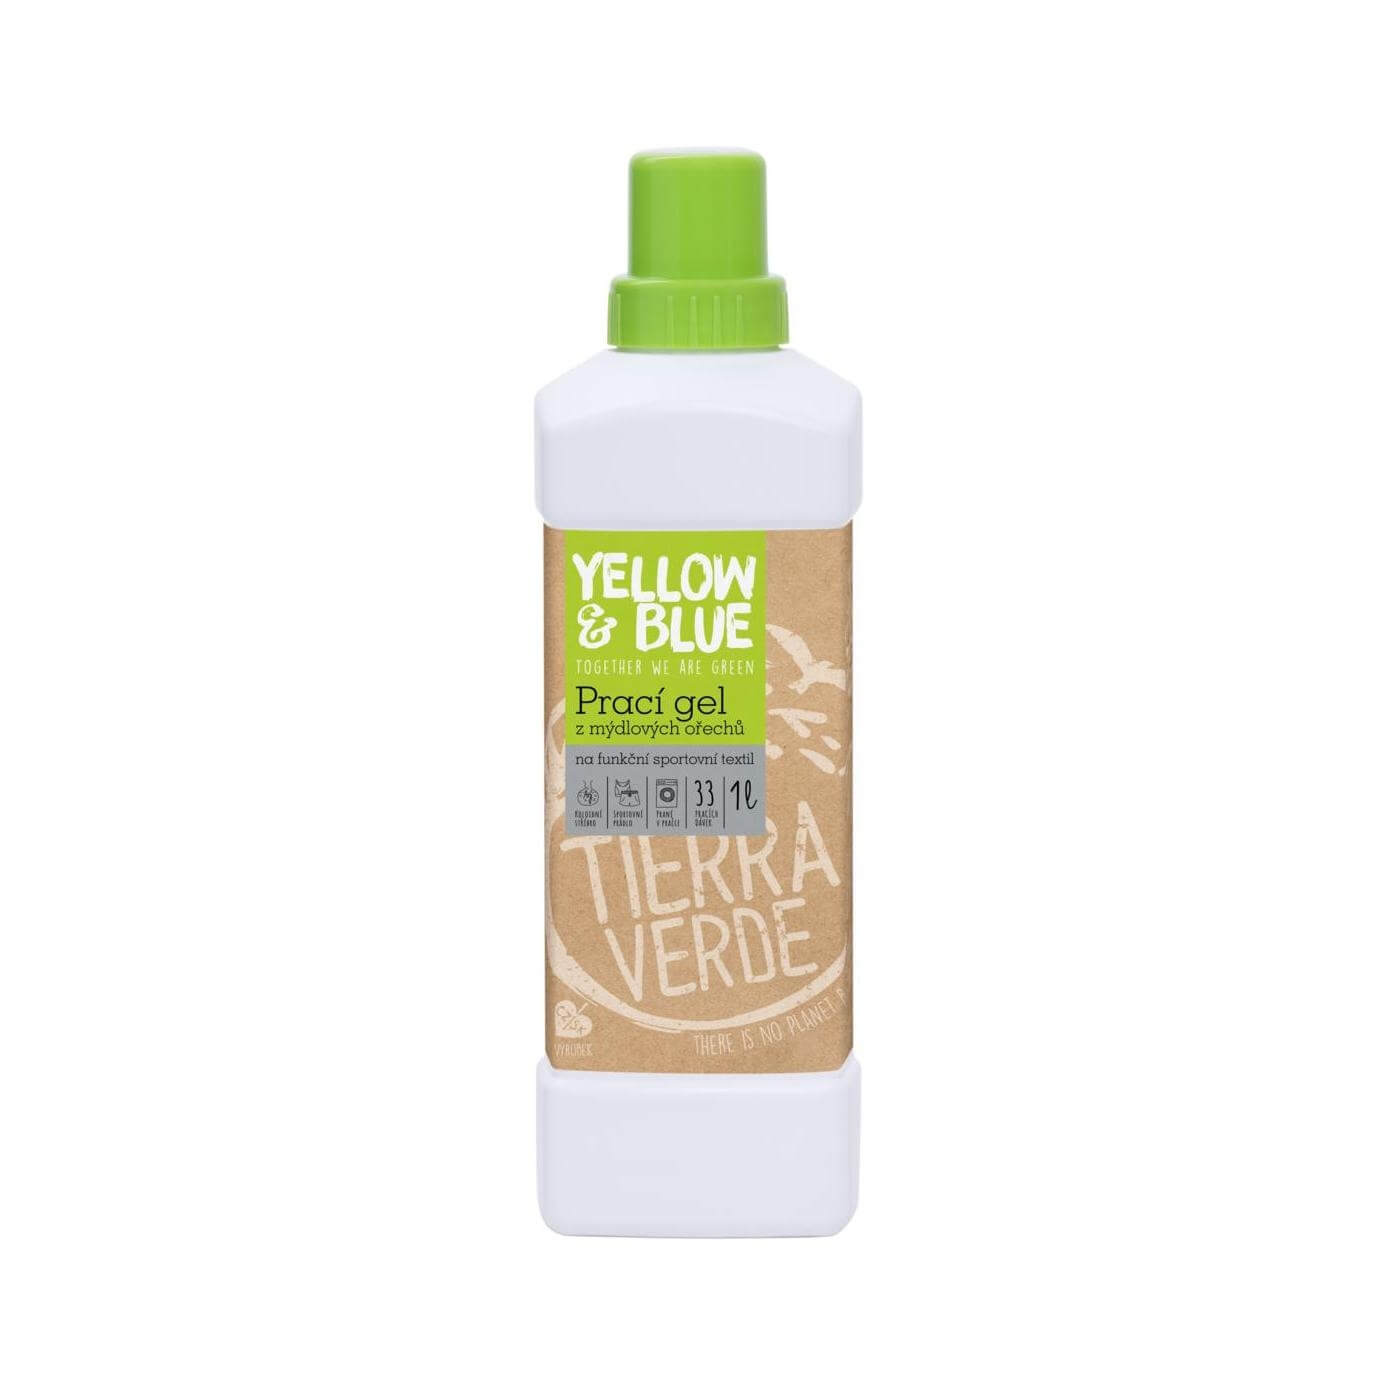 Zobrazit detail výrobku Tierra Verde Prací gel z mýdlových ořechů na funkční prádlo s koloidním stříbrem 1 l